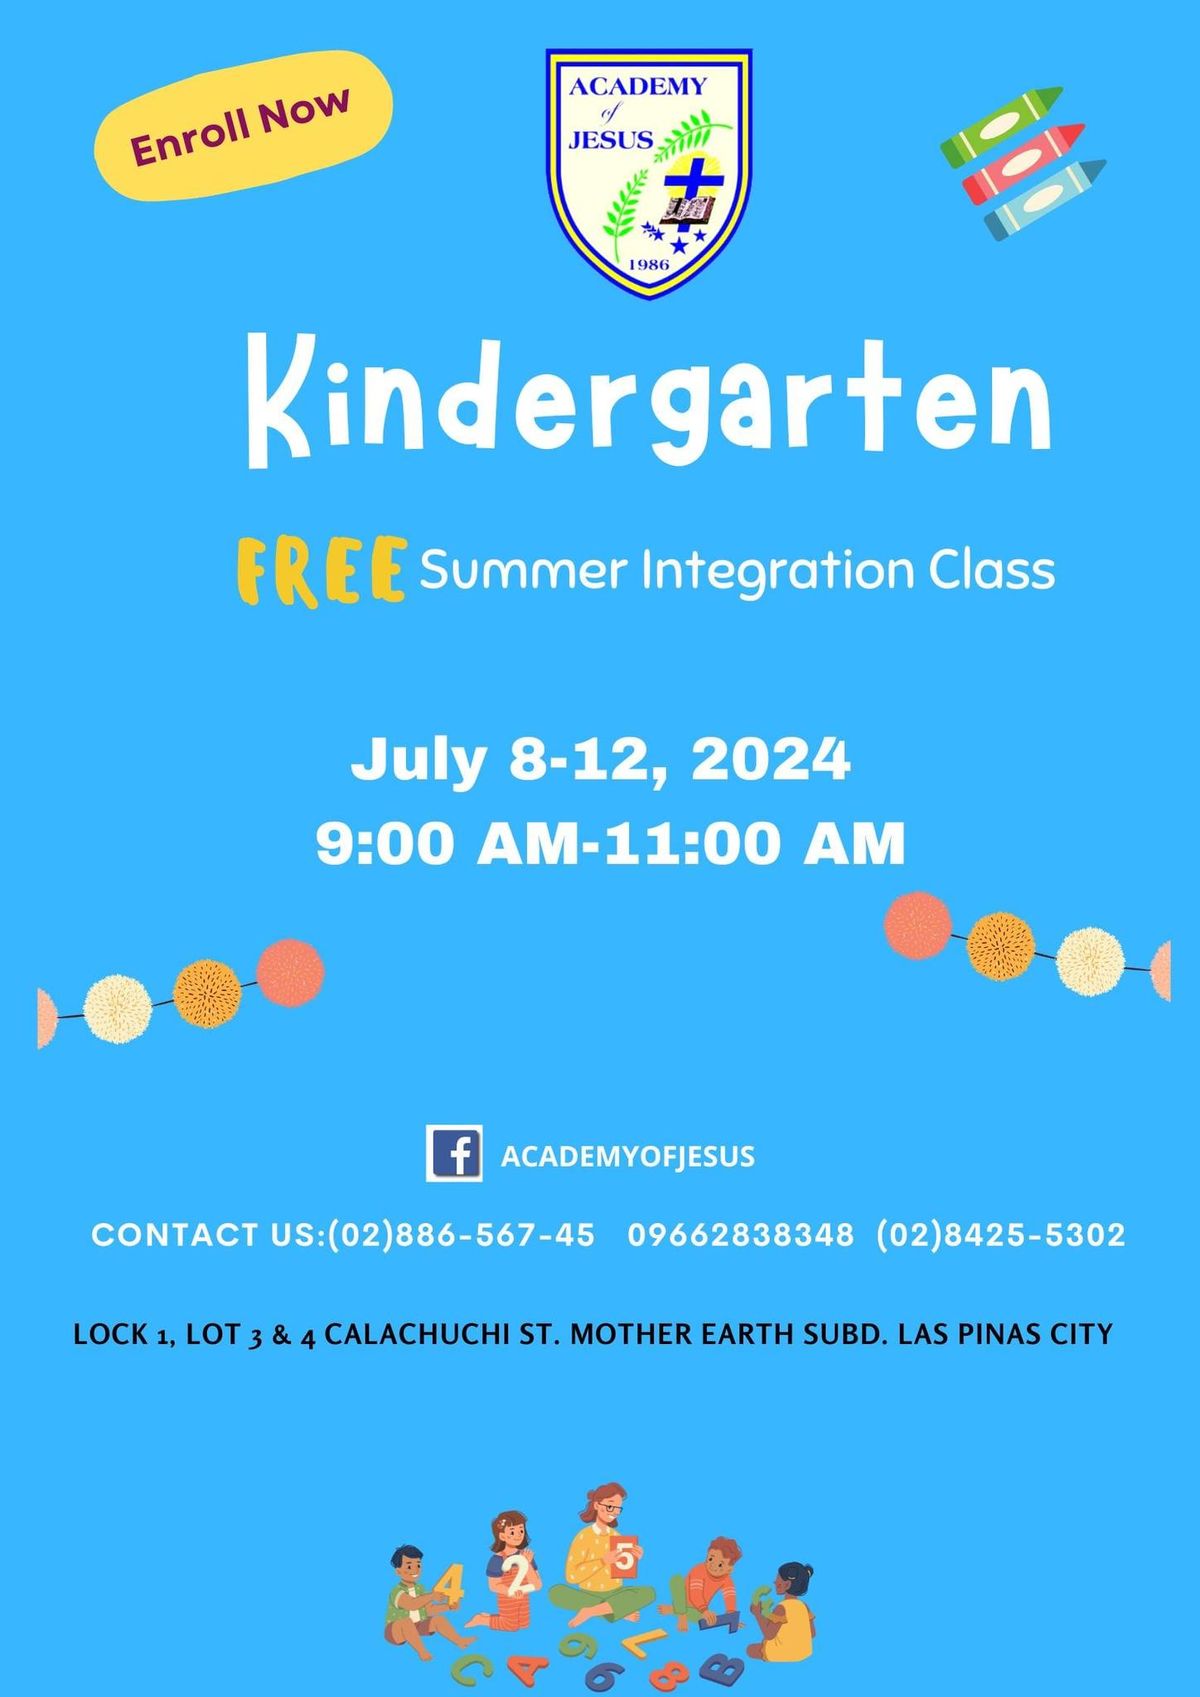 Our Summer Integration Class